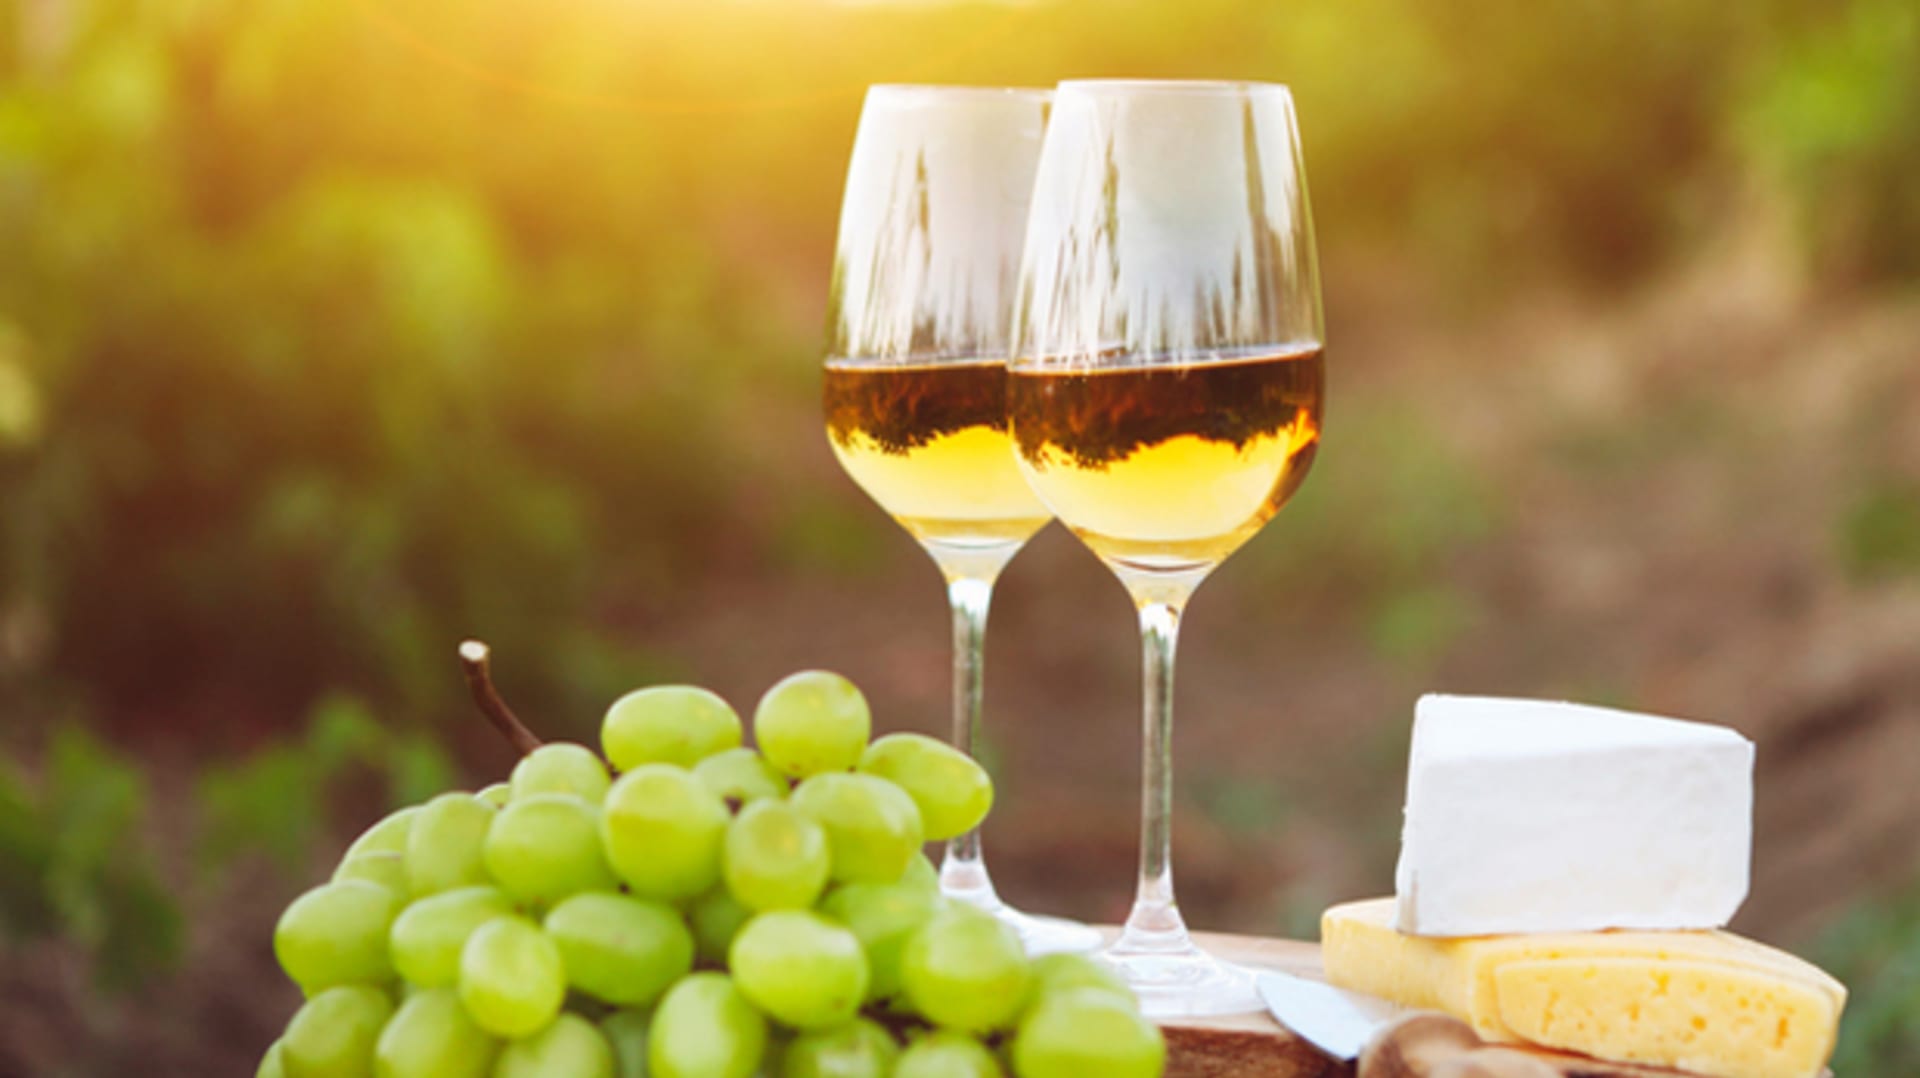 Víno do mrazáku nepatří ani v létě aneb Jak zajistit správnou teplotu vína